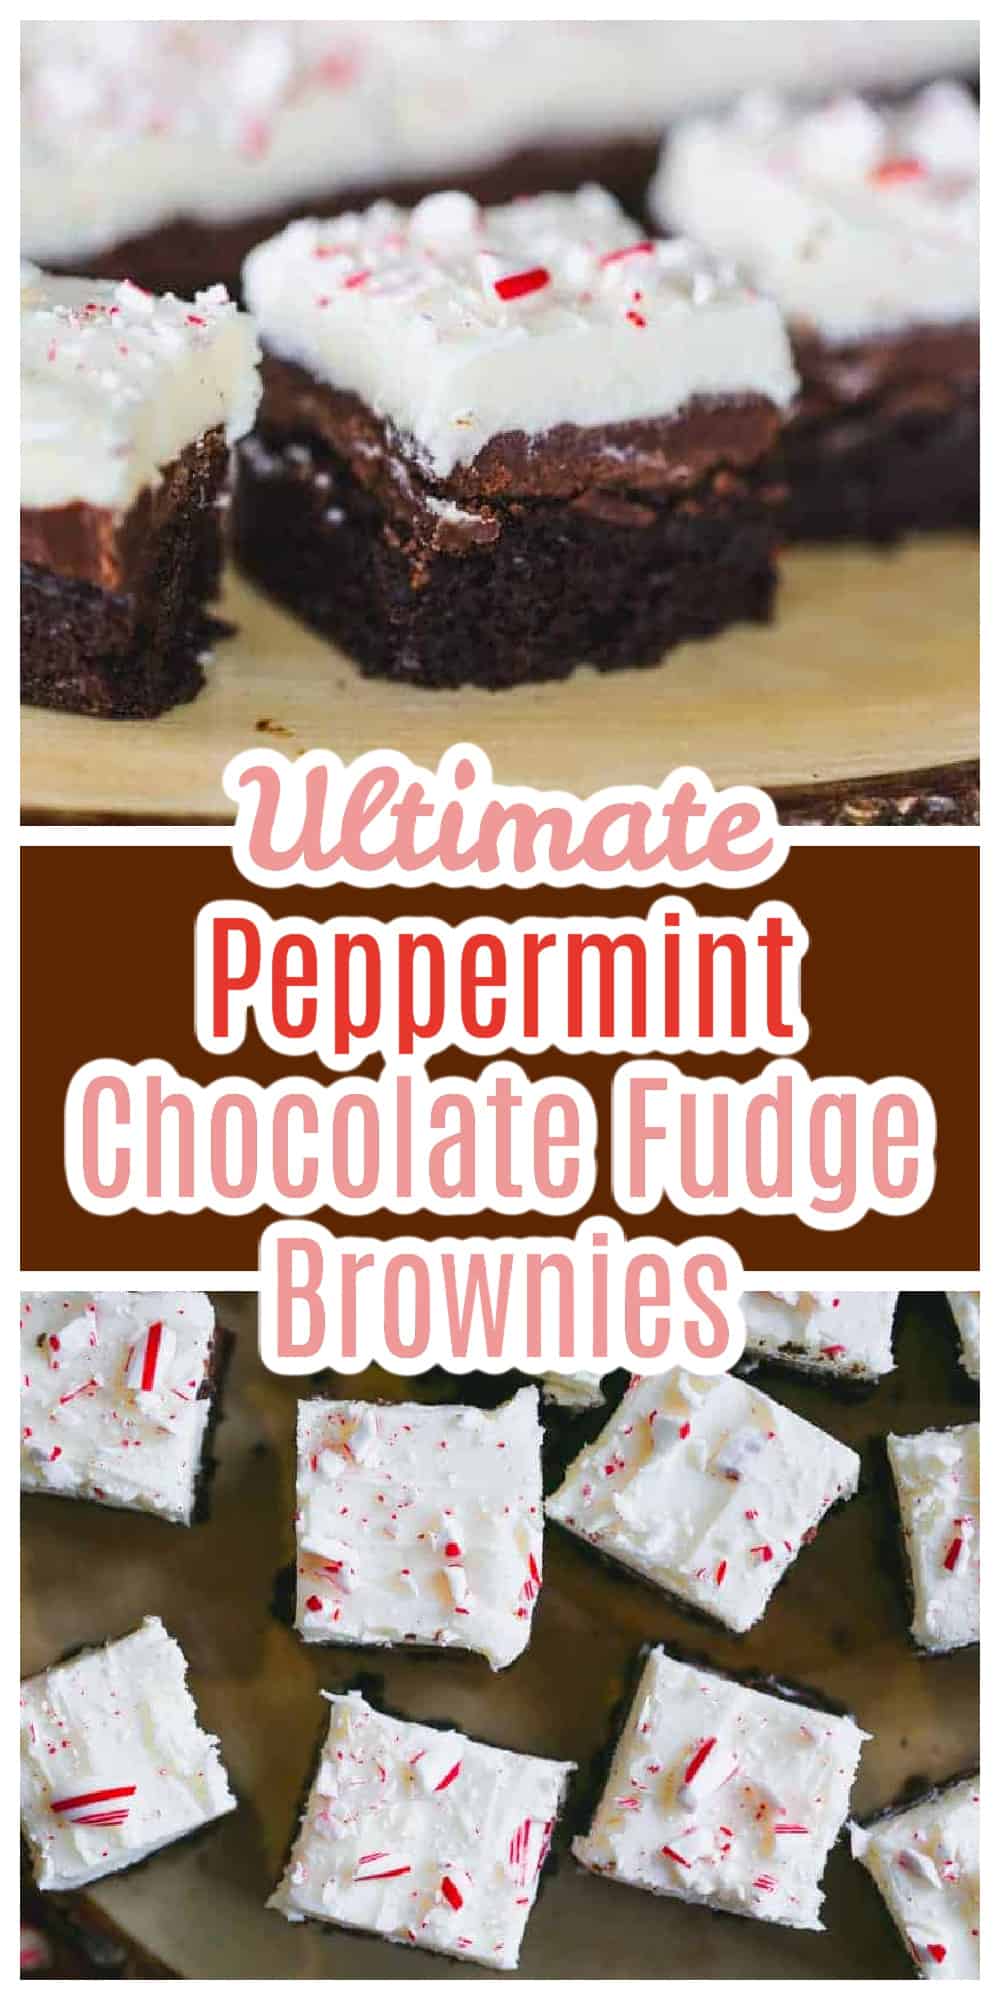 Ultimate Peppermint Chocolate Fudge Brownies